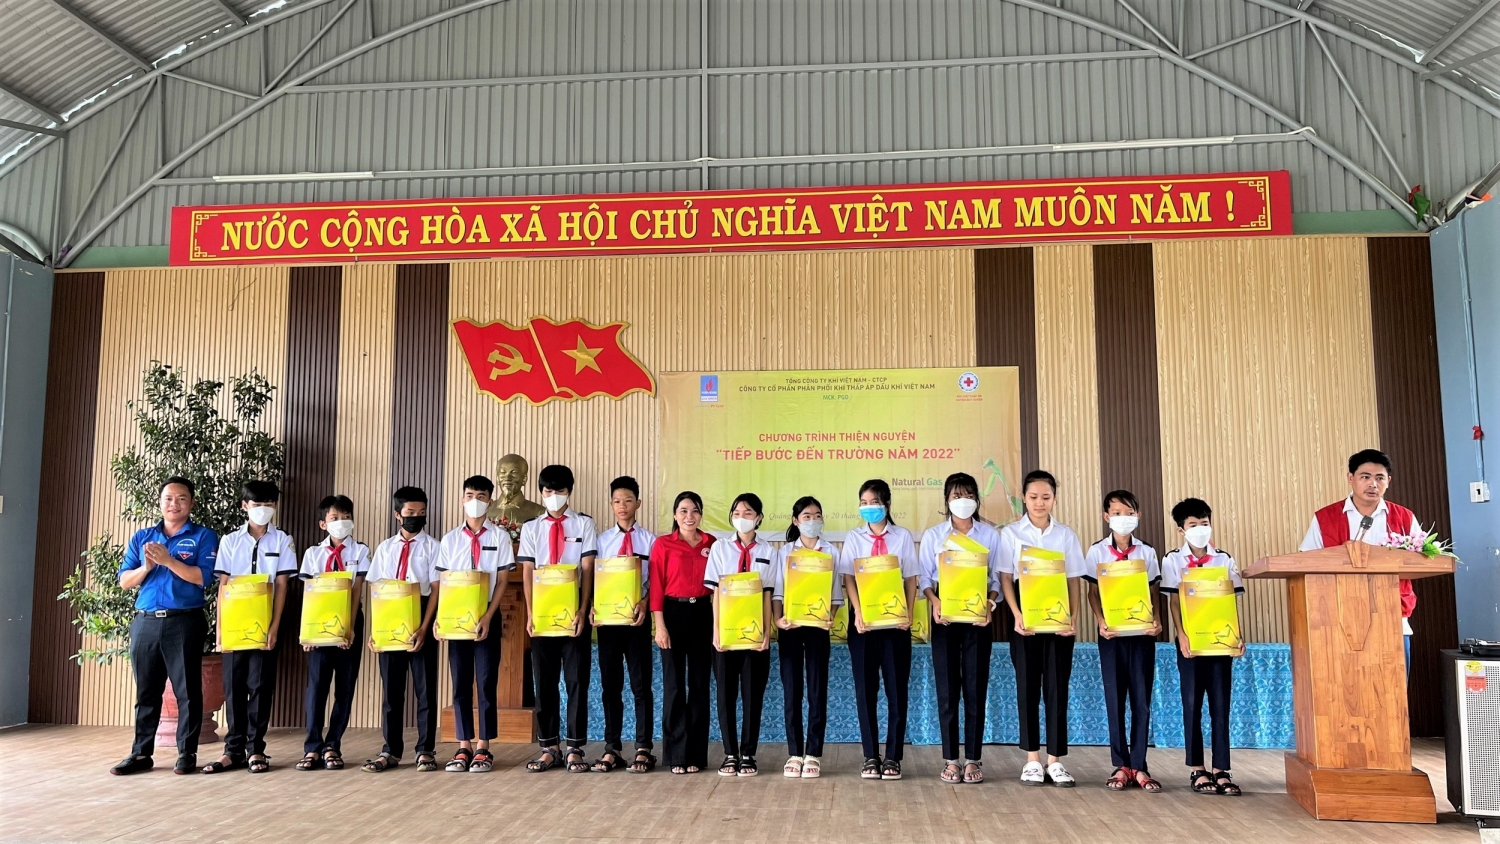 V GAS D phối hợp với tỉnh Quảng Nam tổ chức chương trình thiện nguyện “Tiếp bước đến trường năm 2022”